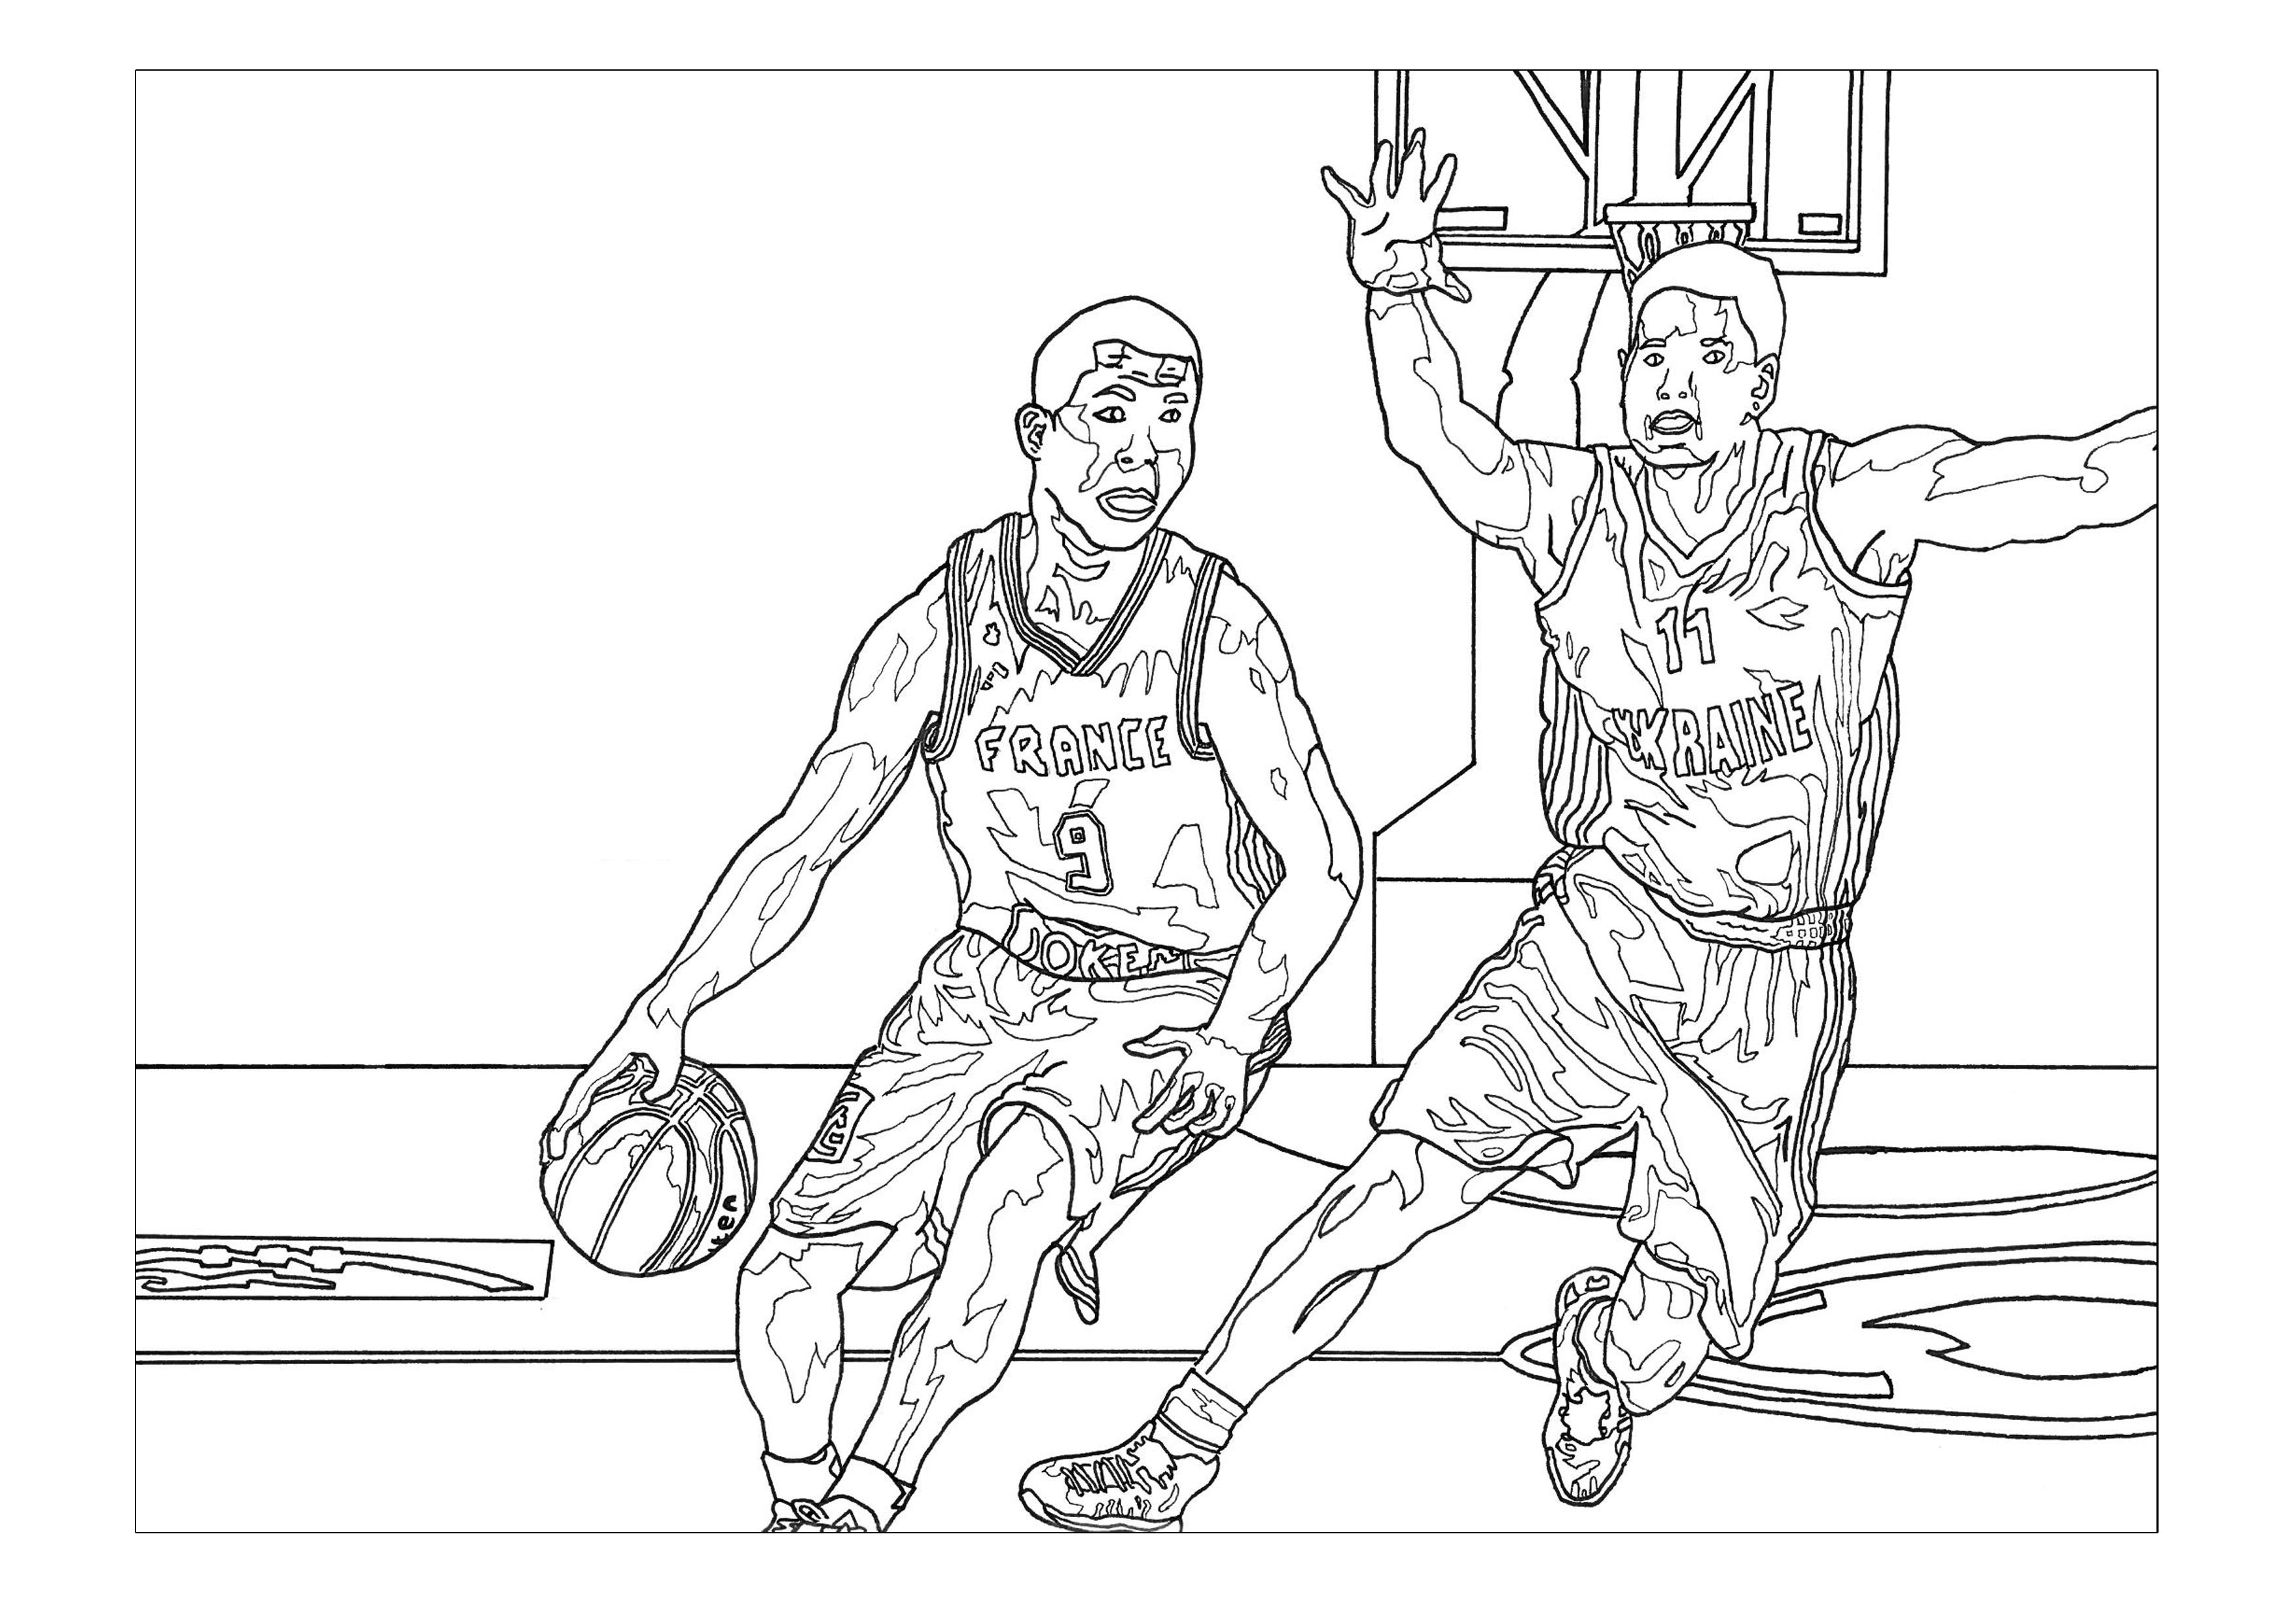 Coloração sobre o tema do basquetebol